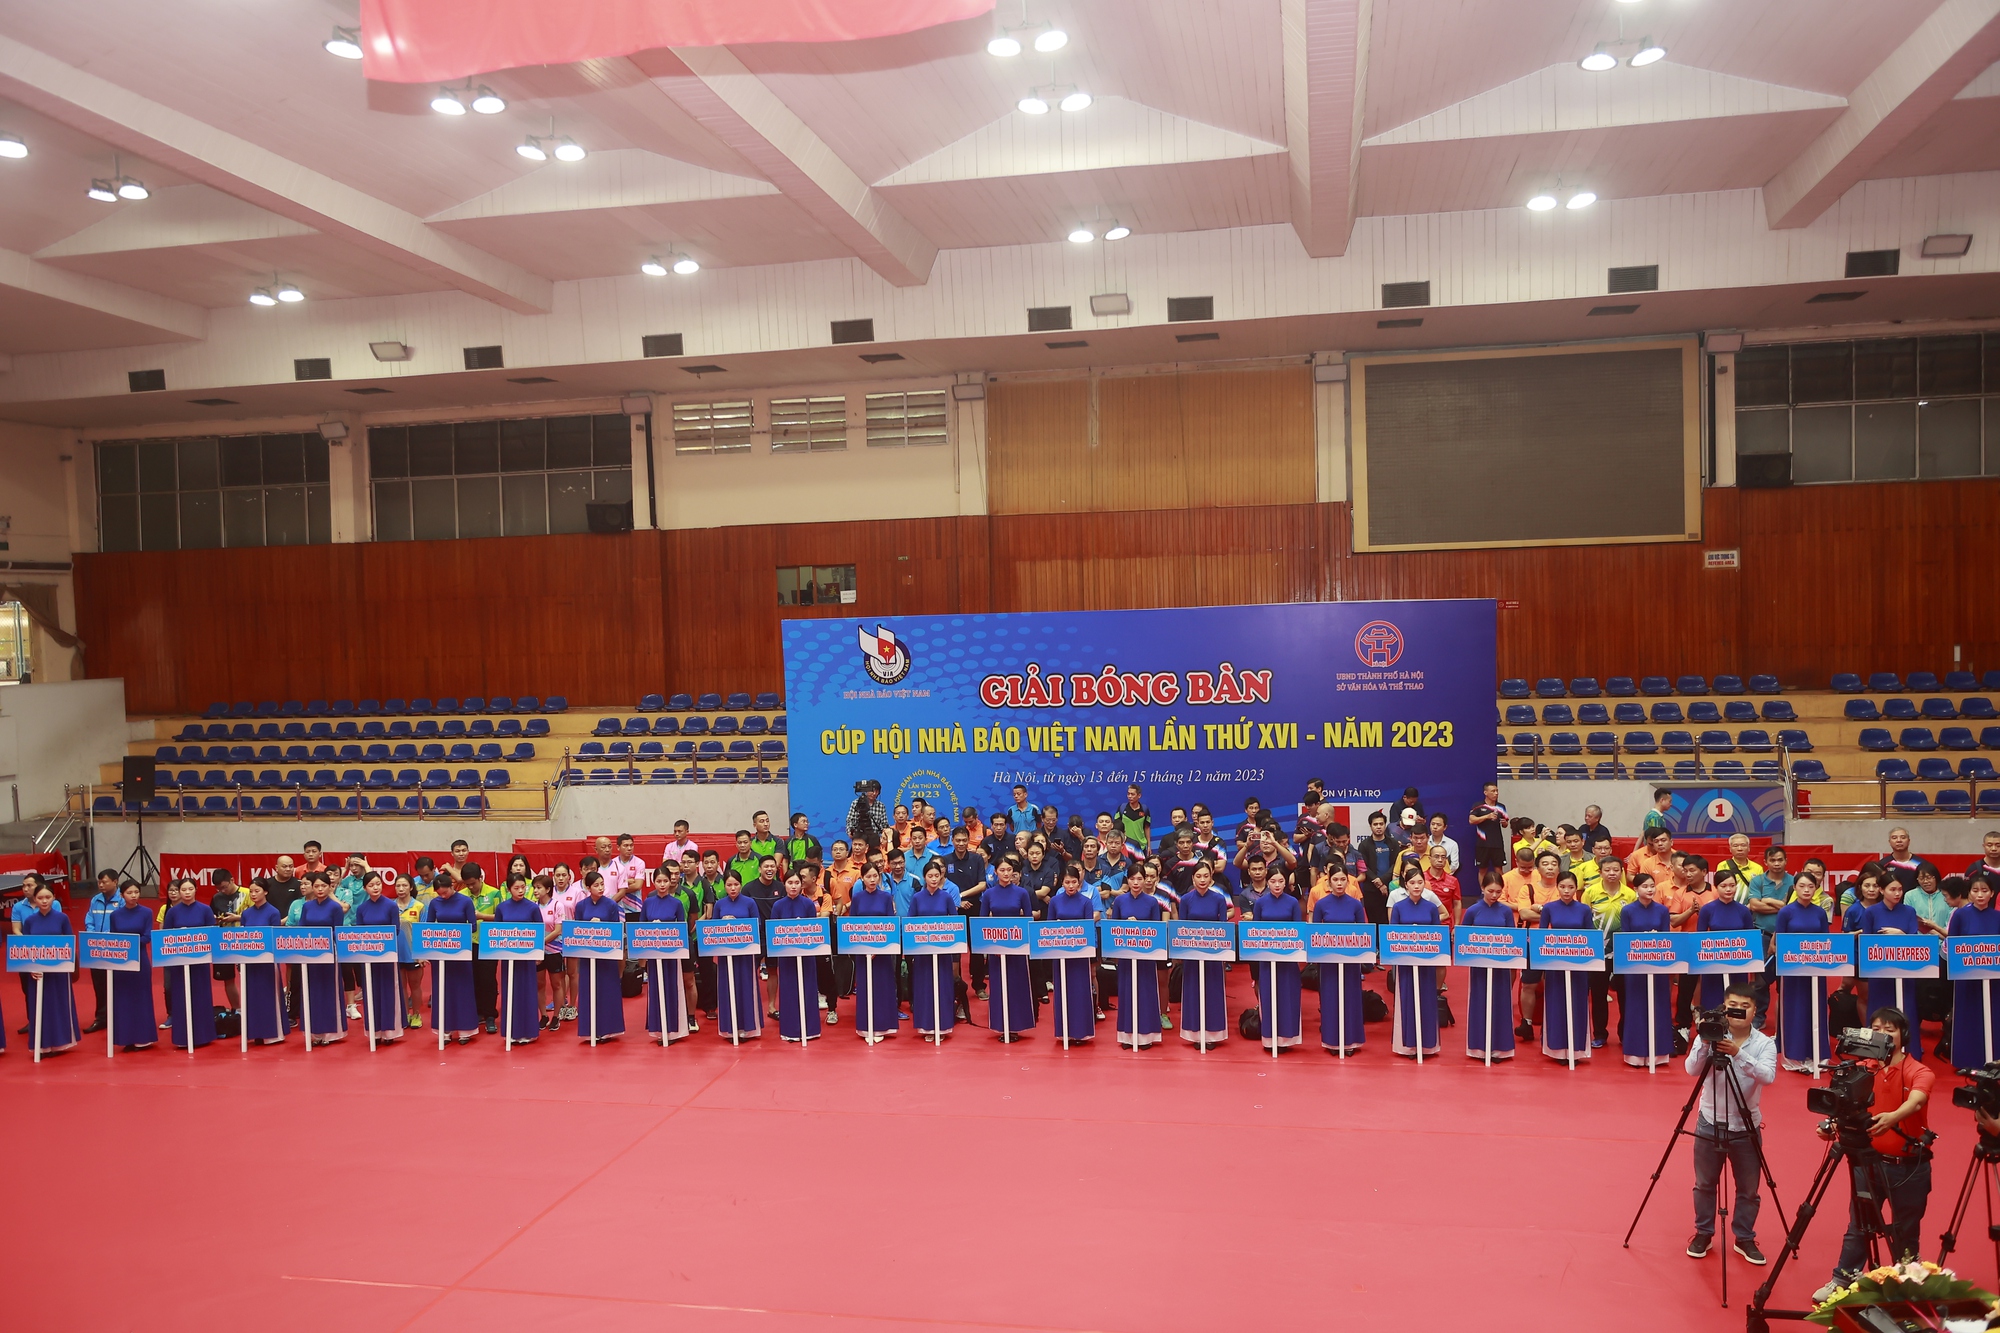 Khai mạc giải Bóng bàn CUP Hội Nhà báo Việt Nam lần thứ XVI - Ảnh 1.